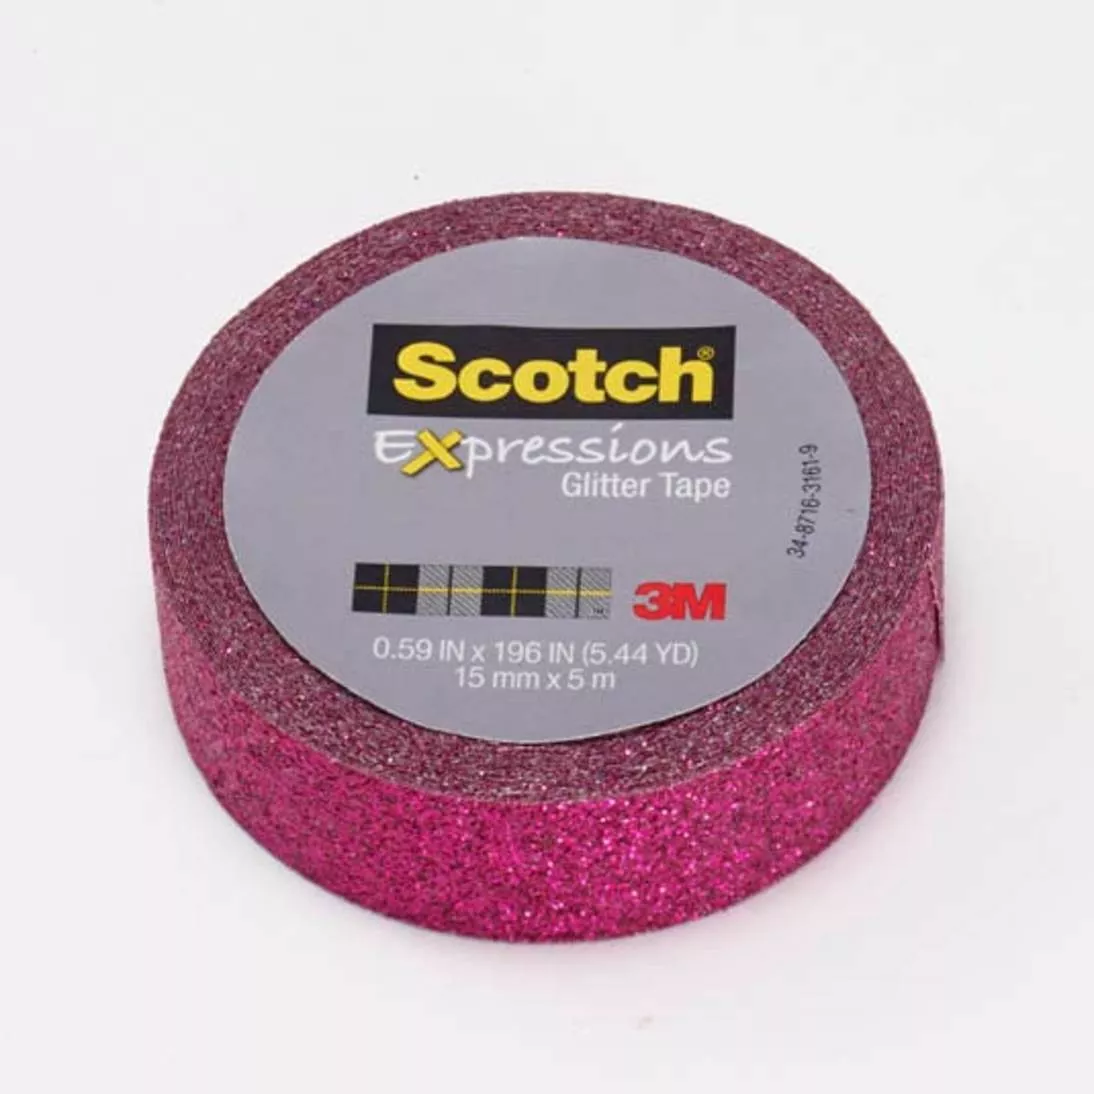 Scotch® Expressions Glitter Tape C514-PNK, .59 in x 196 in (15 mm x 5
m), Hot Pink Glitter